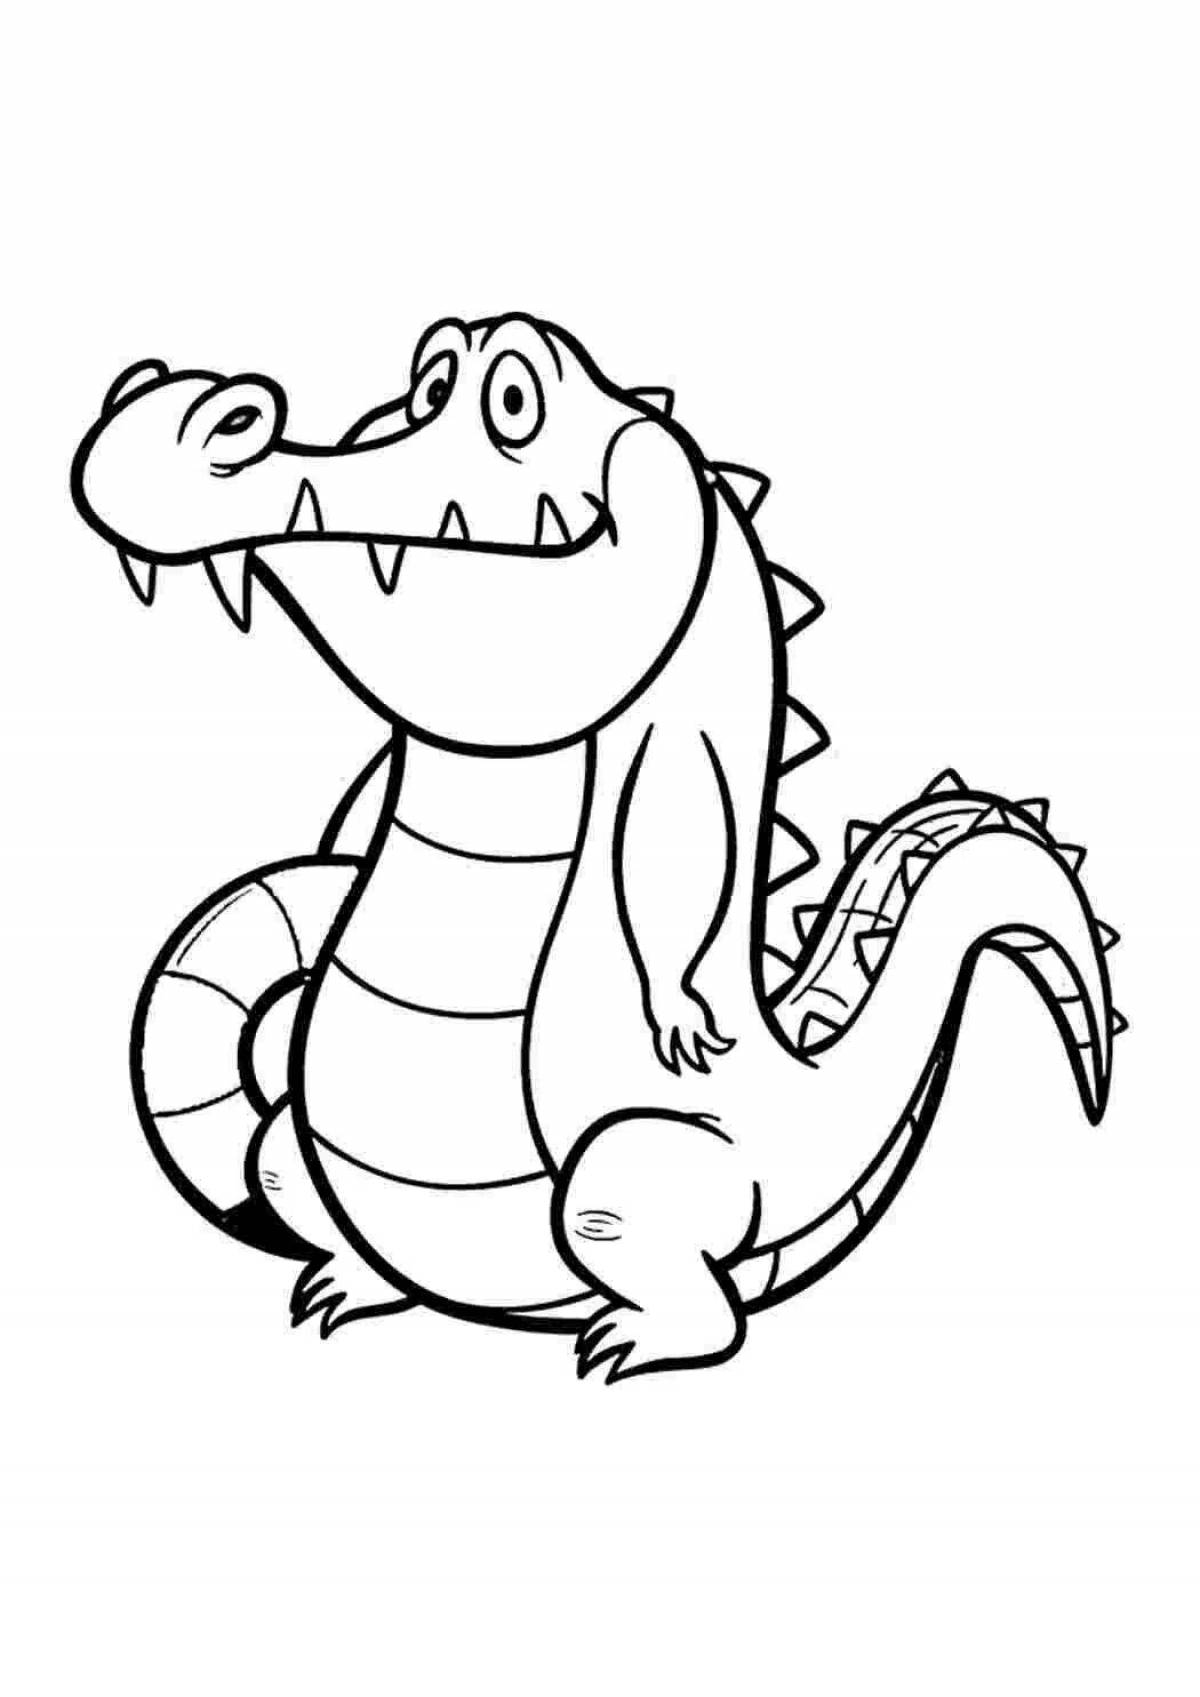 Vibrant crocodile coloring page for pre-k